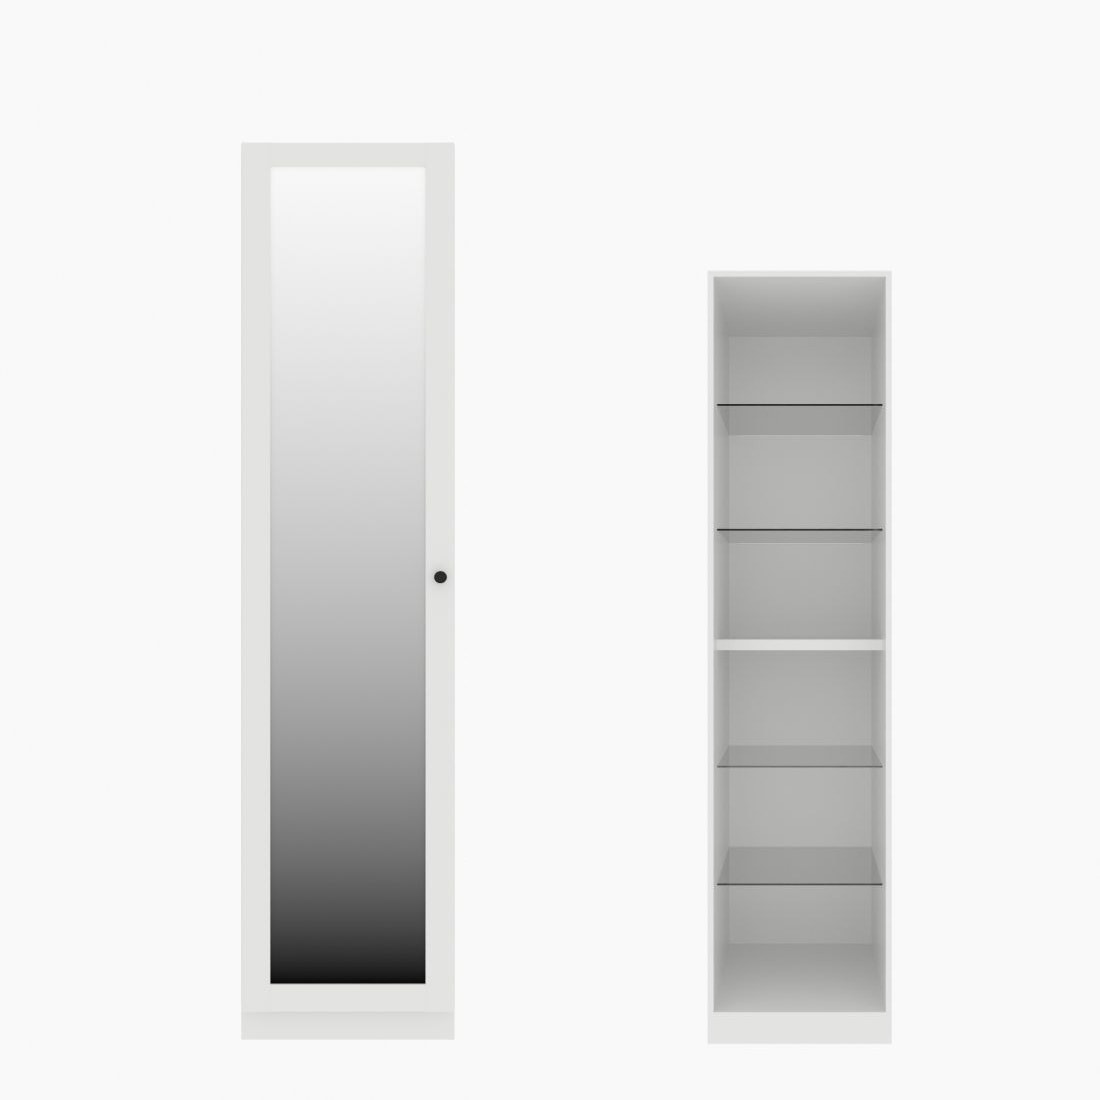 ตู้เสื้อผ้า ตู้โชว์ชั้นกระจก OP-H (หน้าบานเปิดซ้าย) ขนาด 50 ซม. รุ่น Blox สีขาว&กระจกเงา01